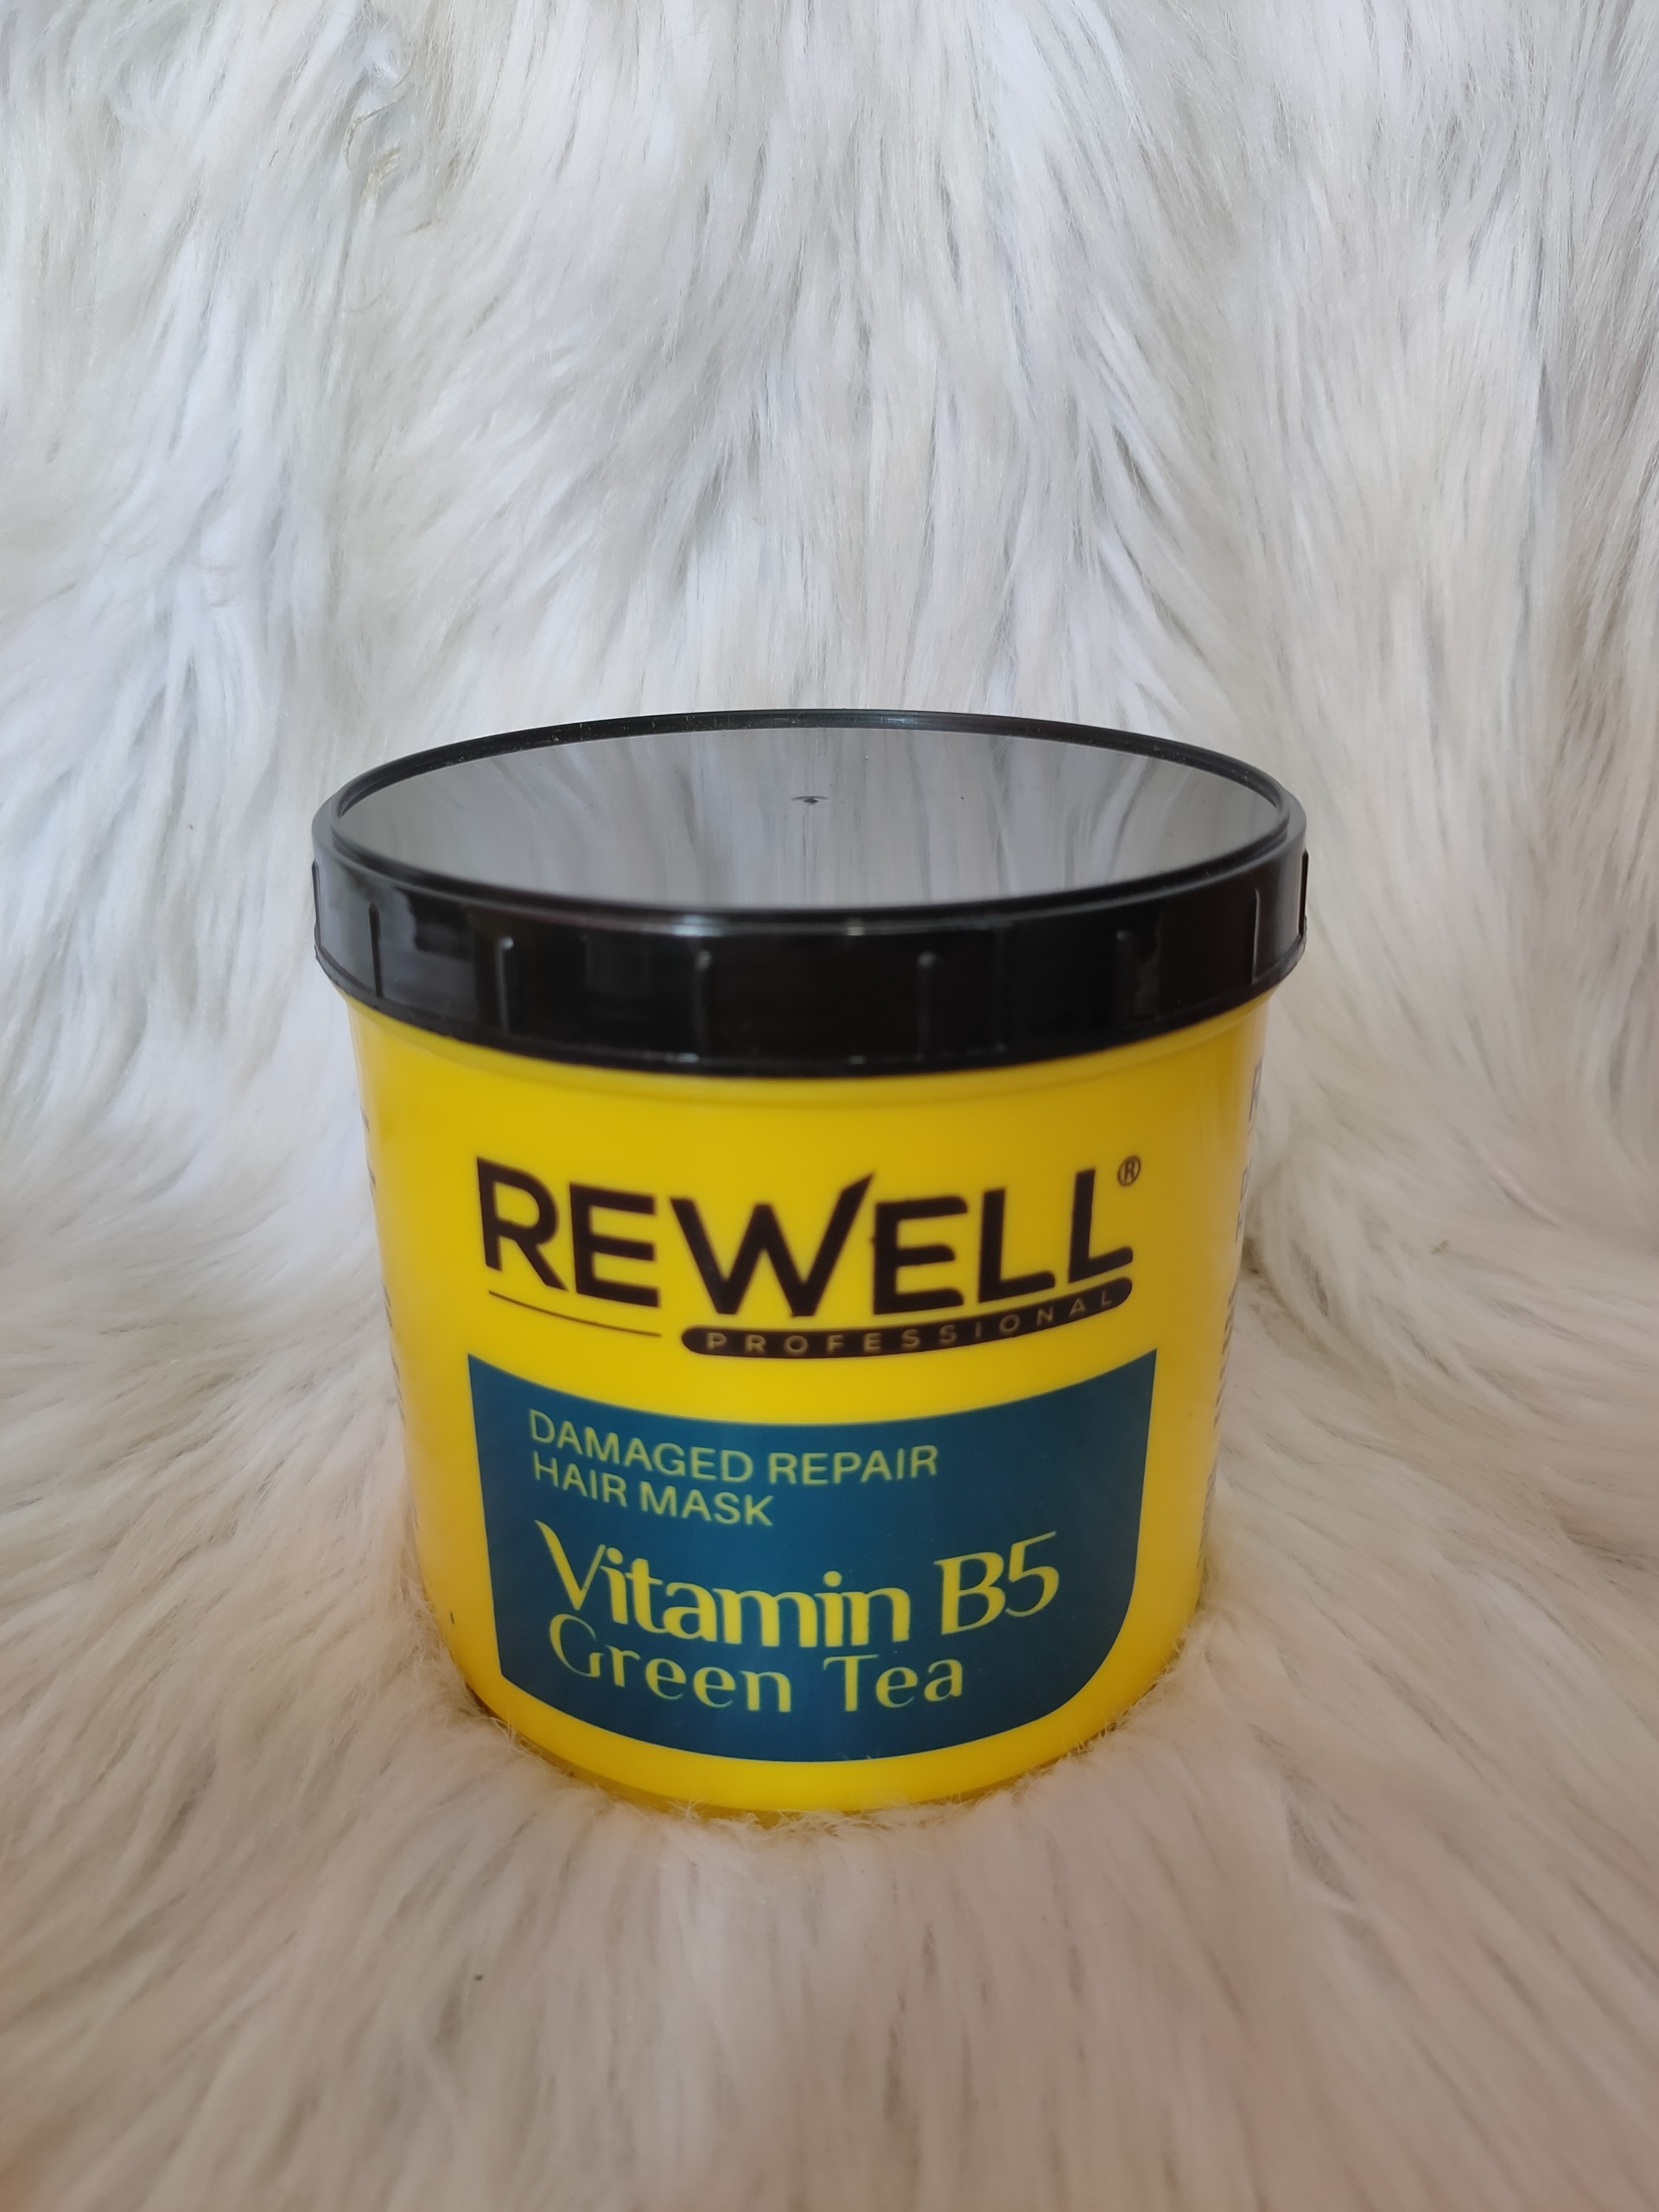 Hấp dầu Rewell Vitamin B5 Green tea 1000ml